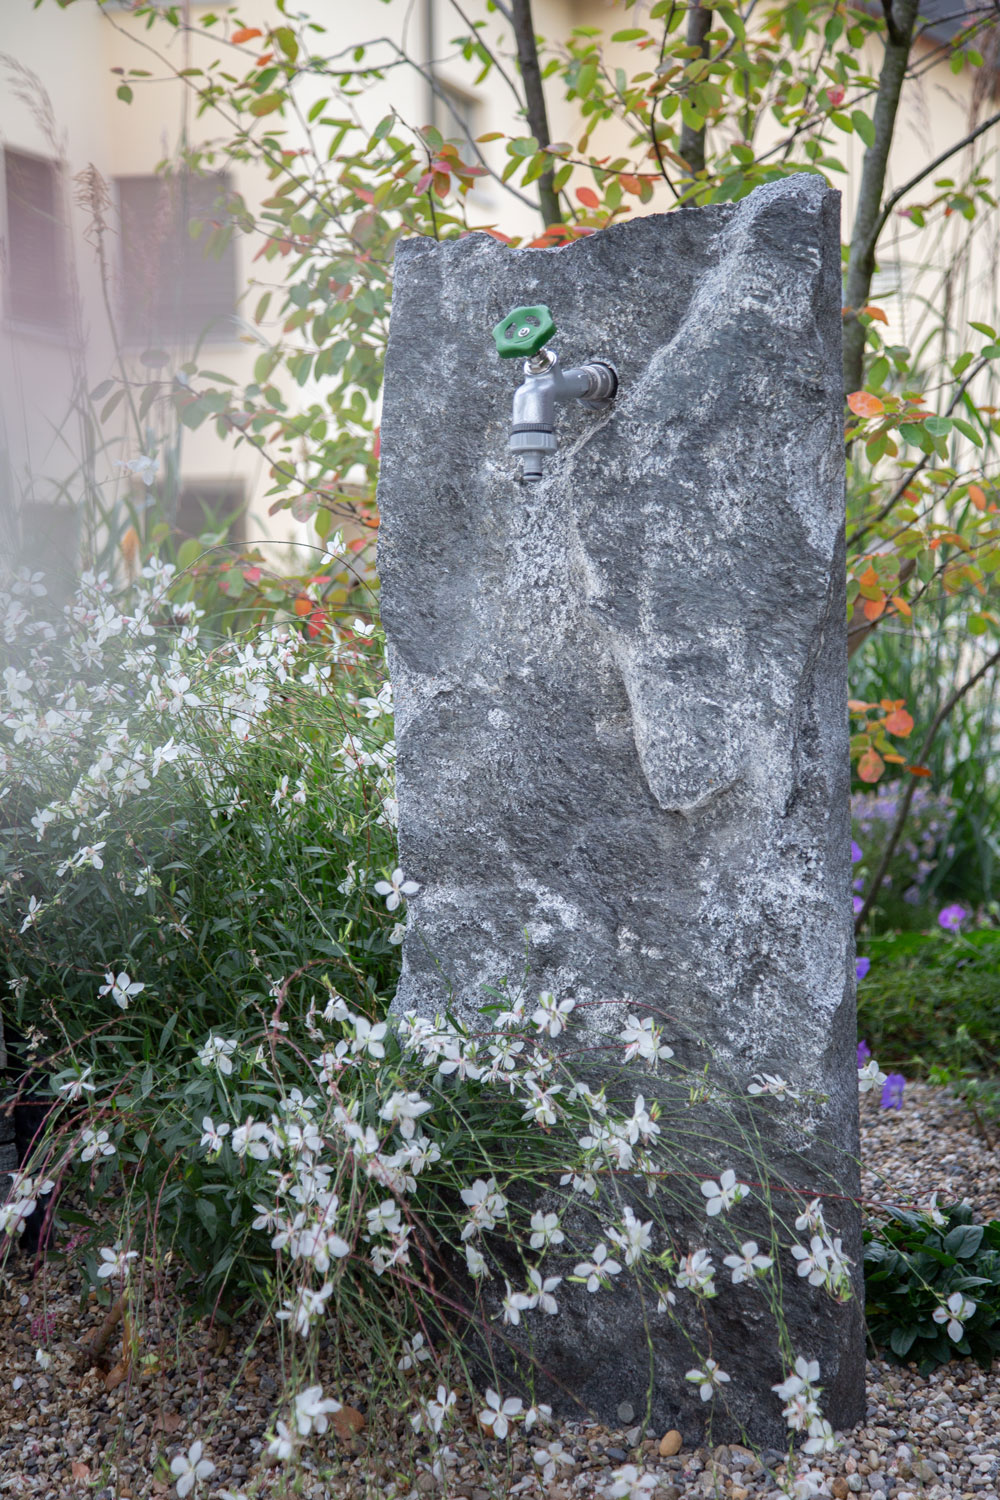 Die Arbeit mit Naturstein zählt zum Spezialgebiet vom Wohlfühlgarten Portmann!